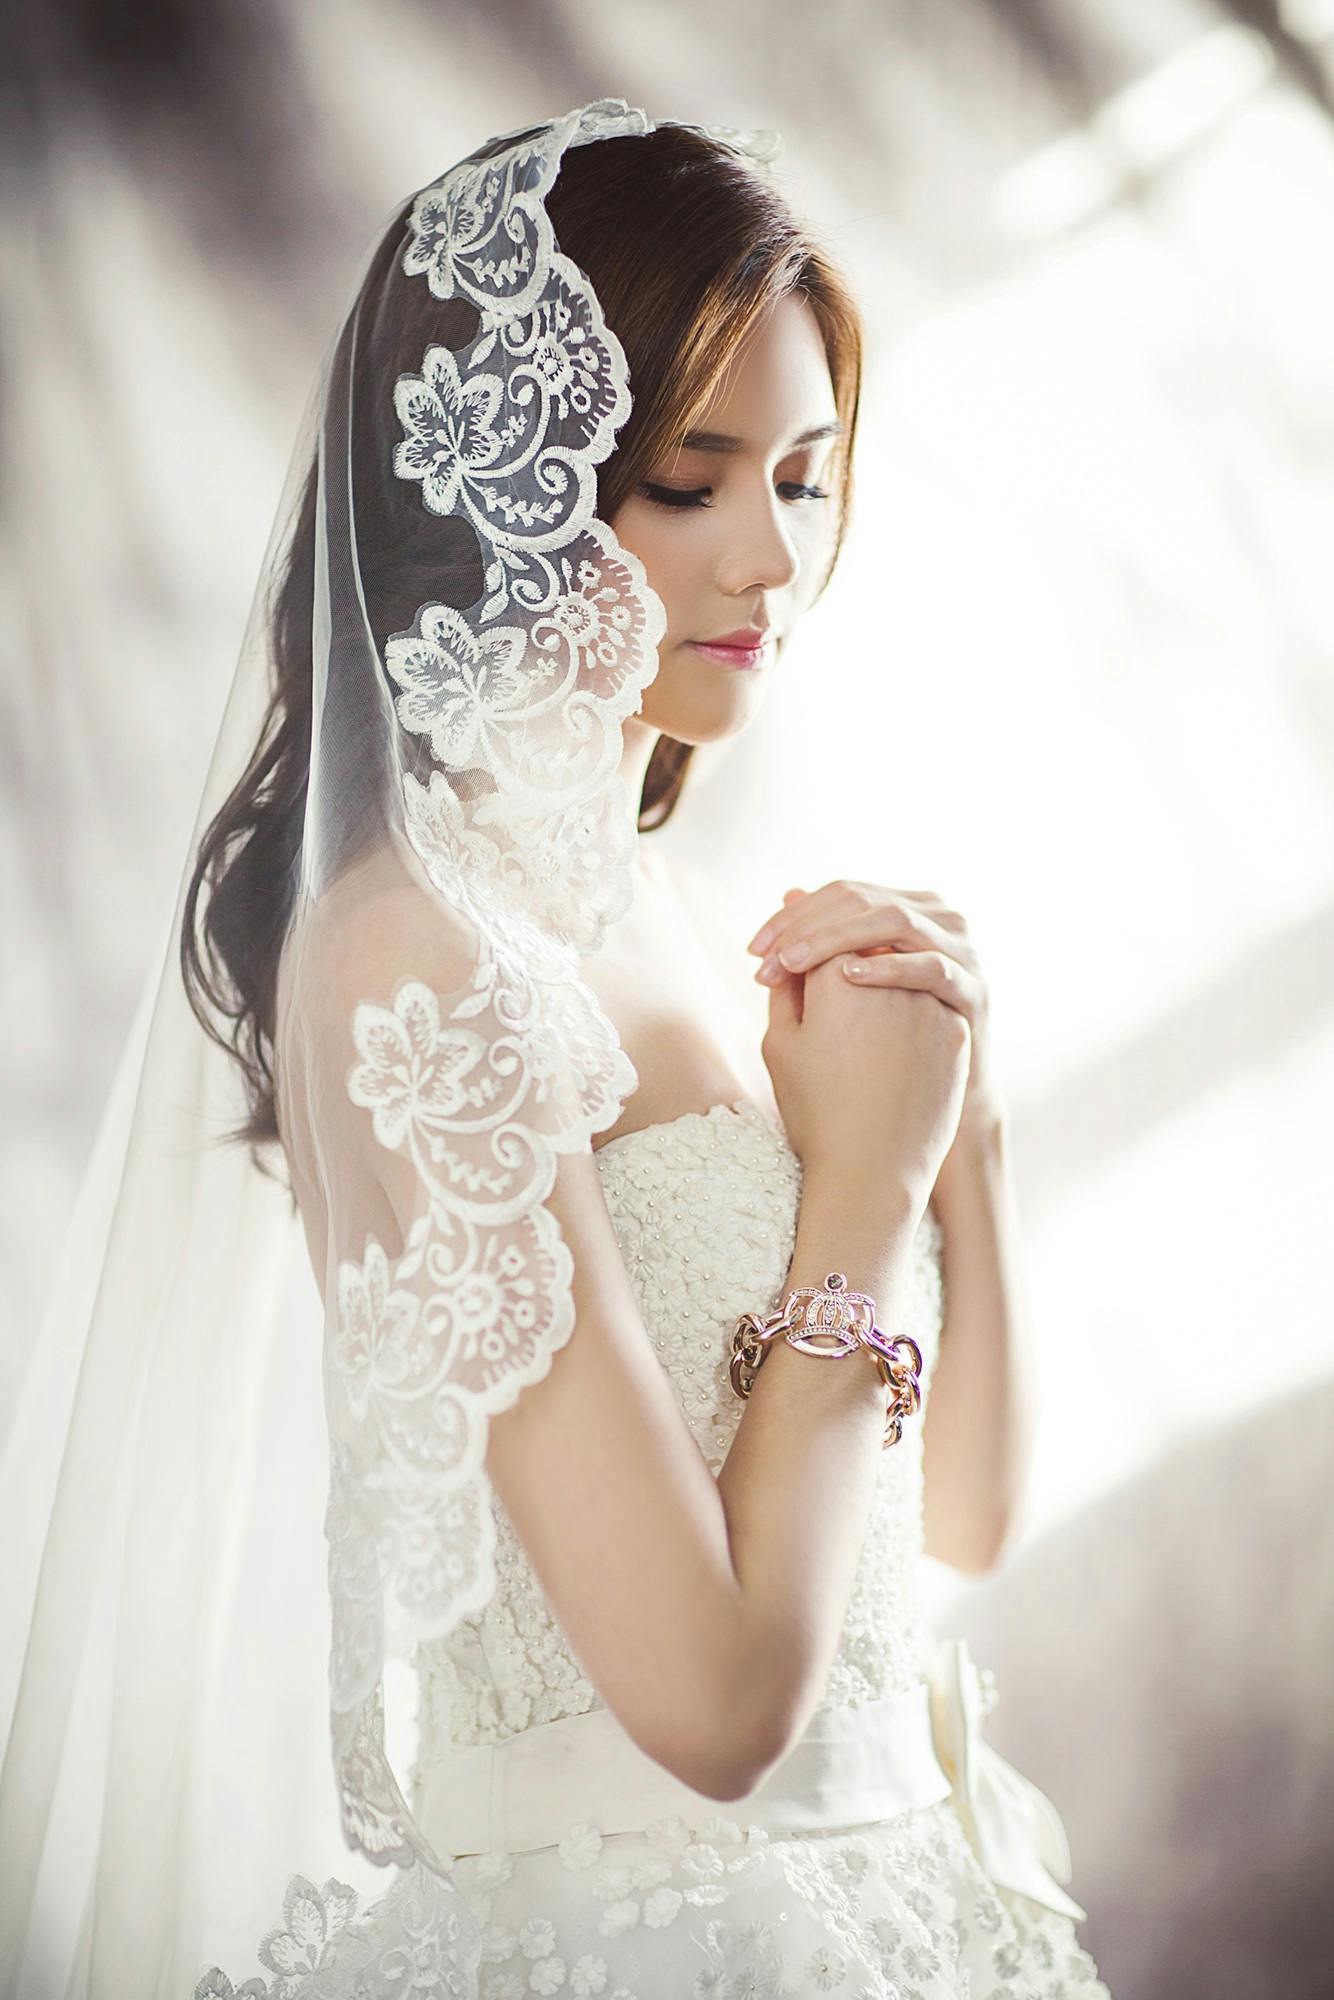 Eine Braut in ihrem Hochzeitskleid | Quelle: Pexels